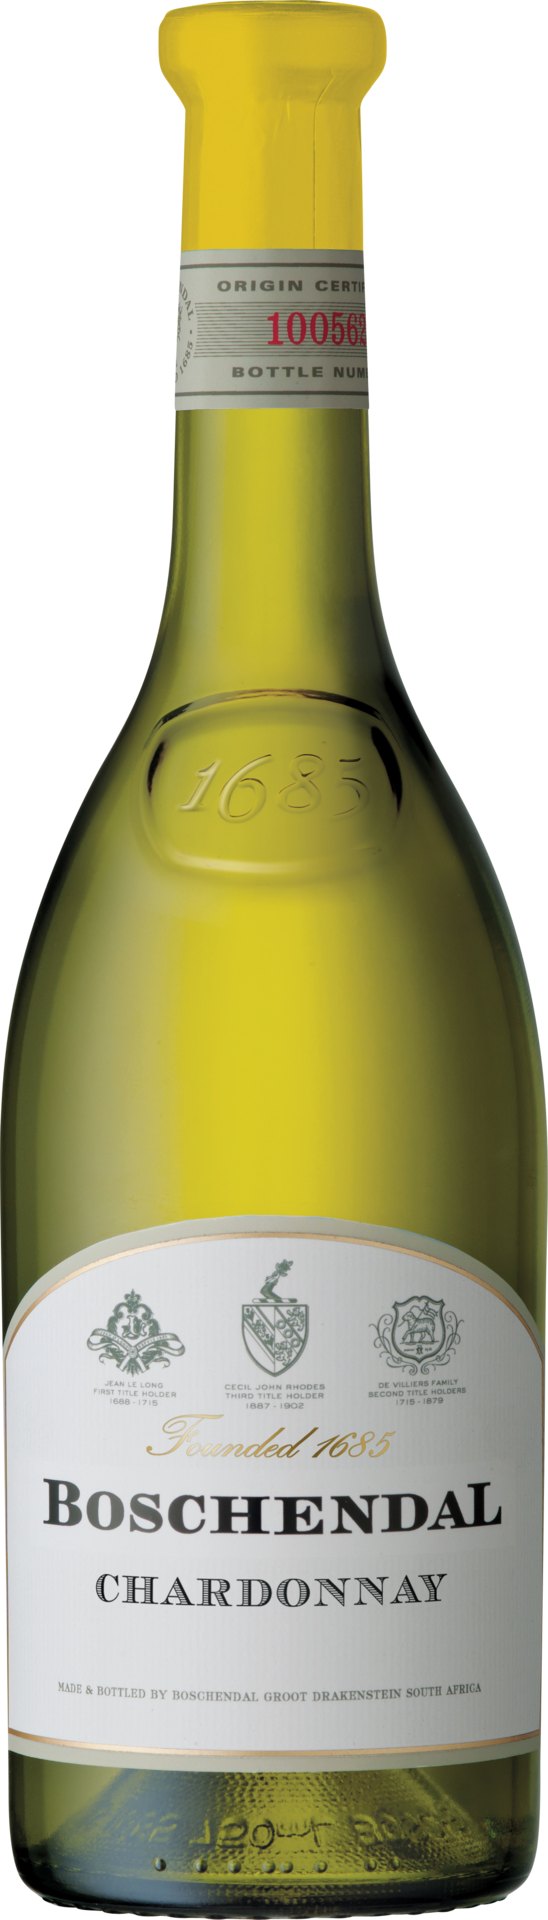 1685 Chardonnay